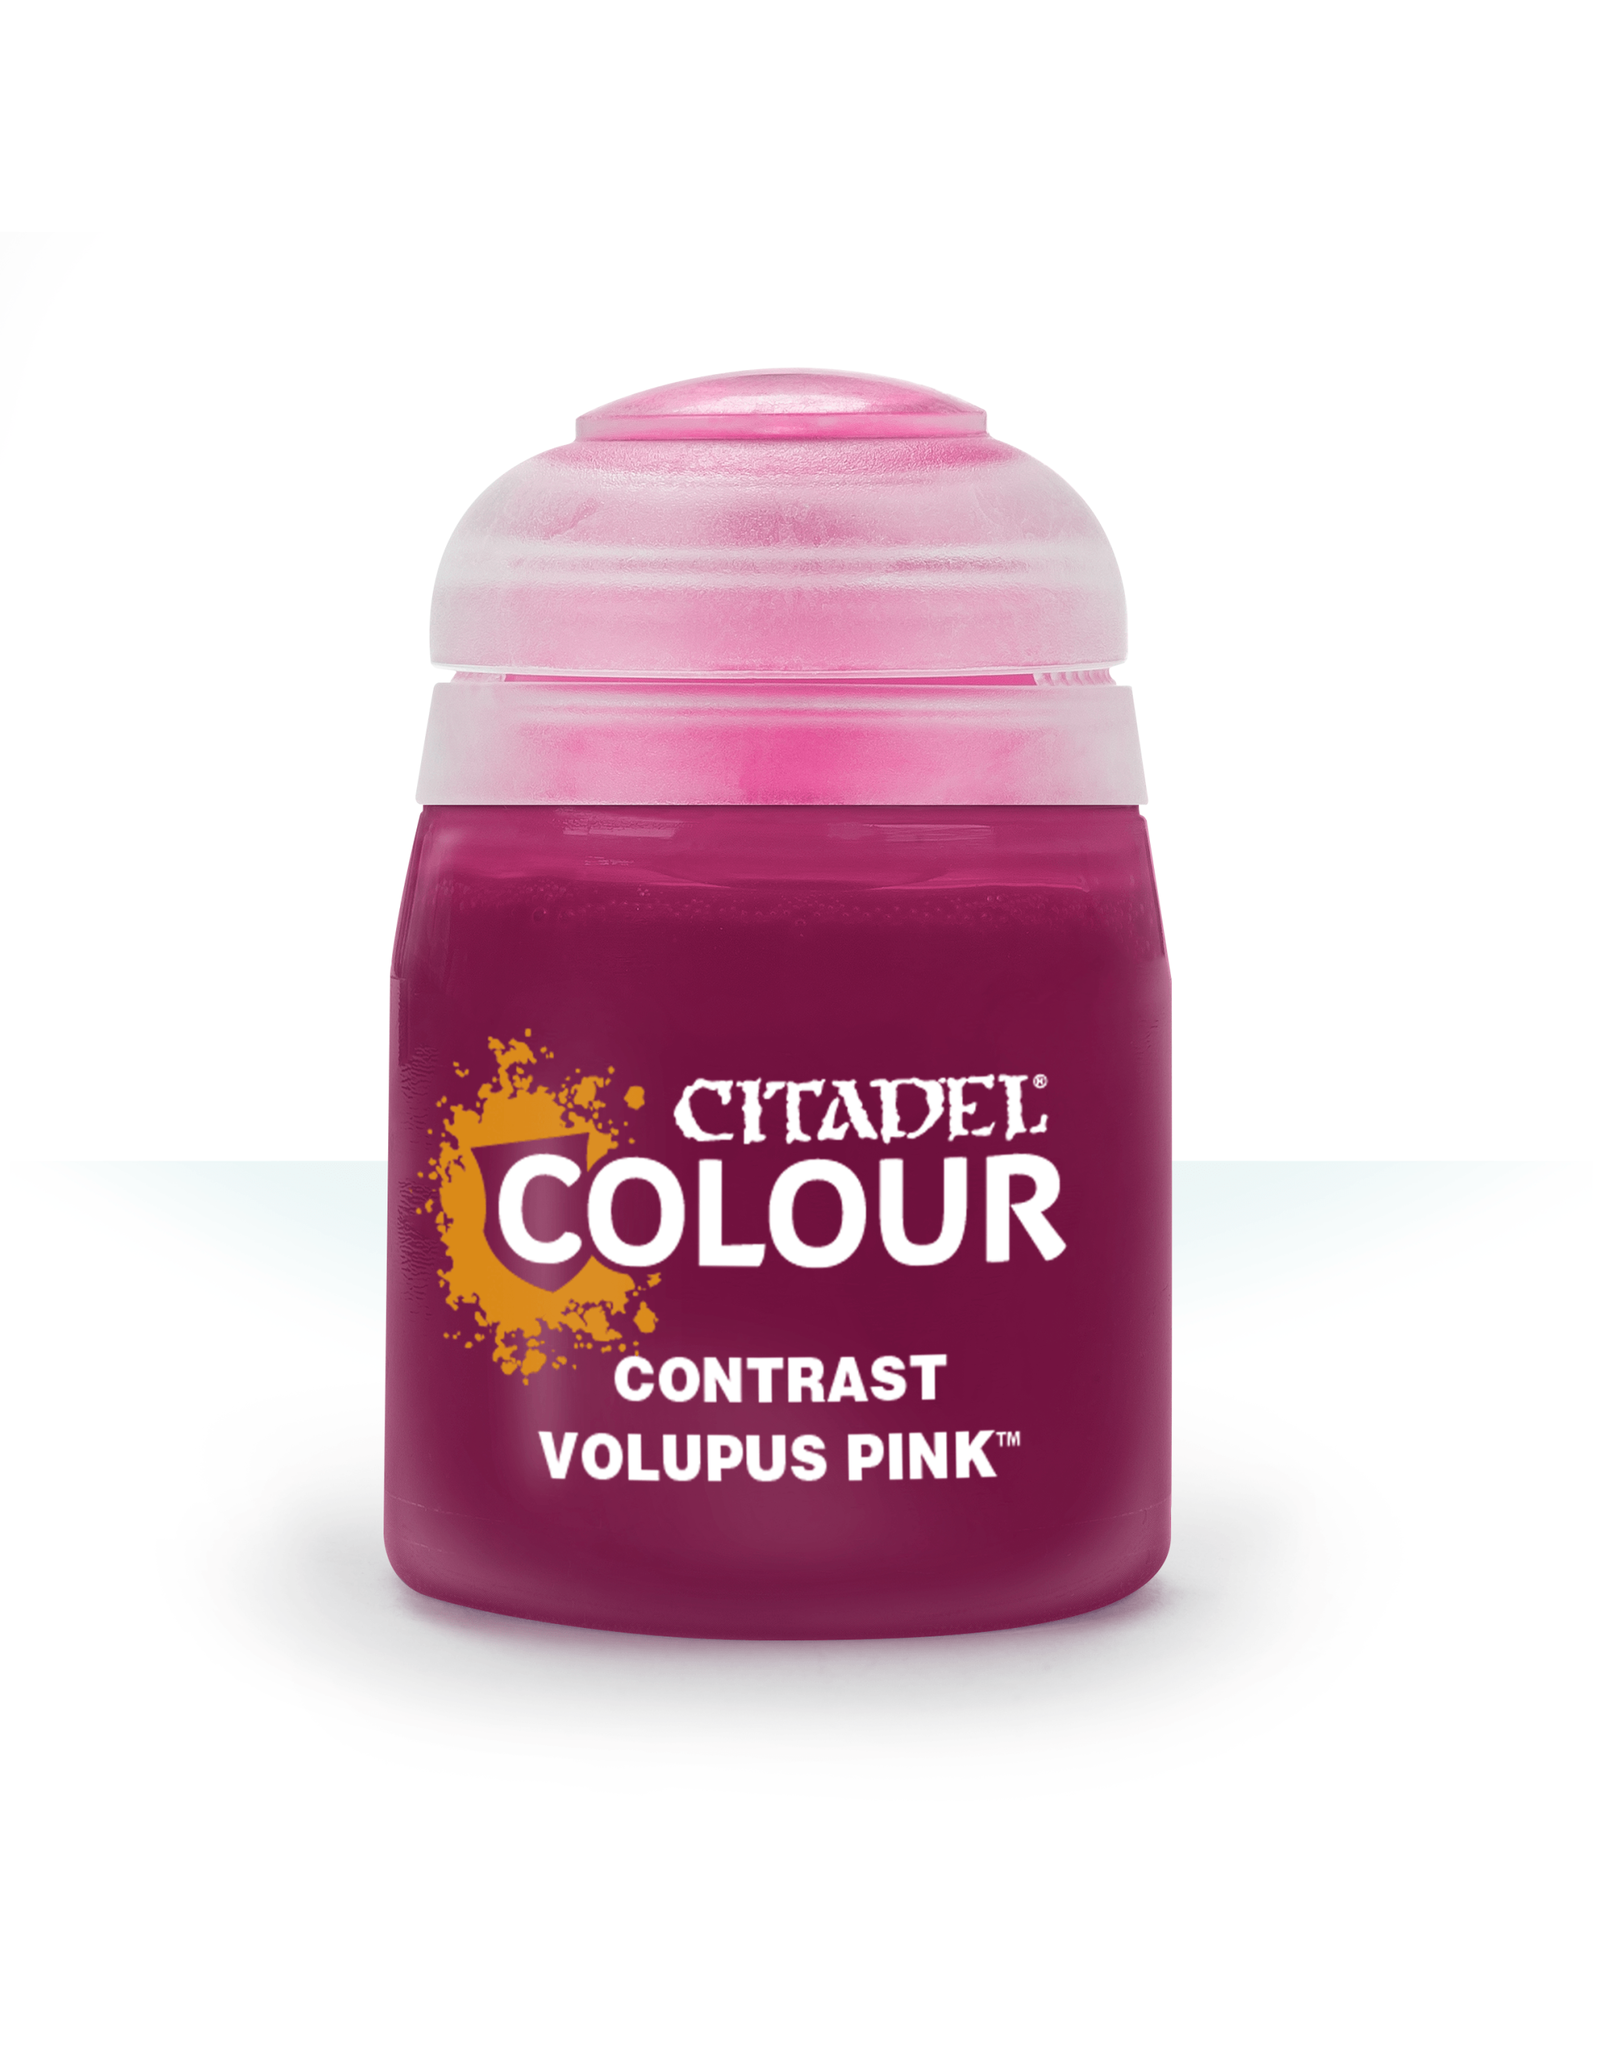 Citadel Volupus Pink